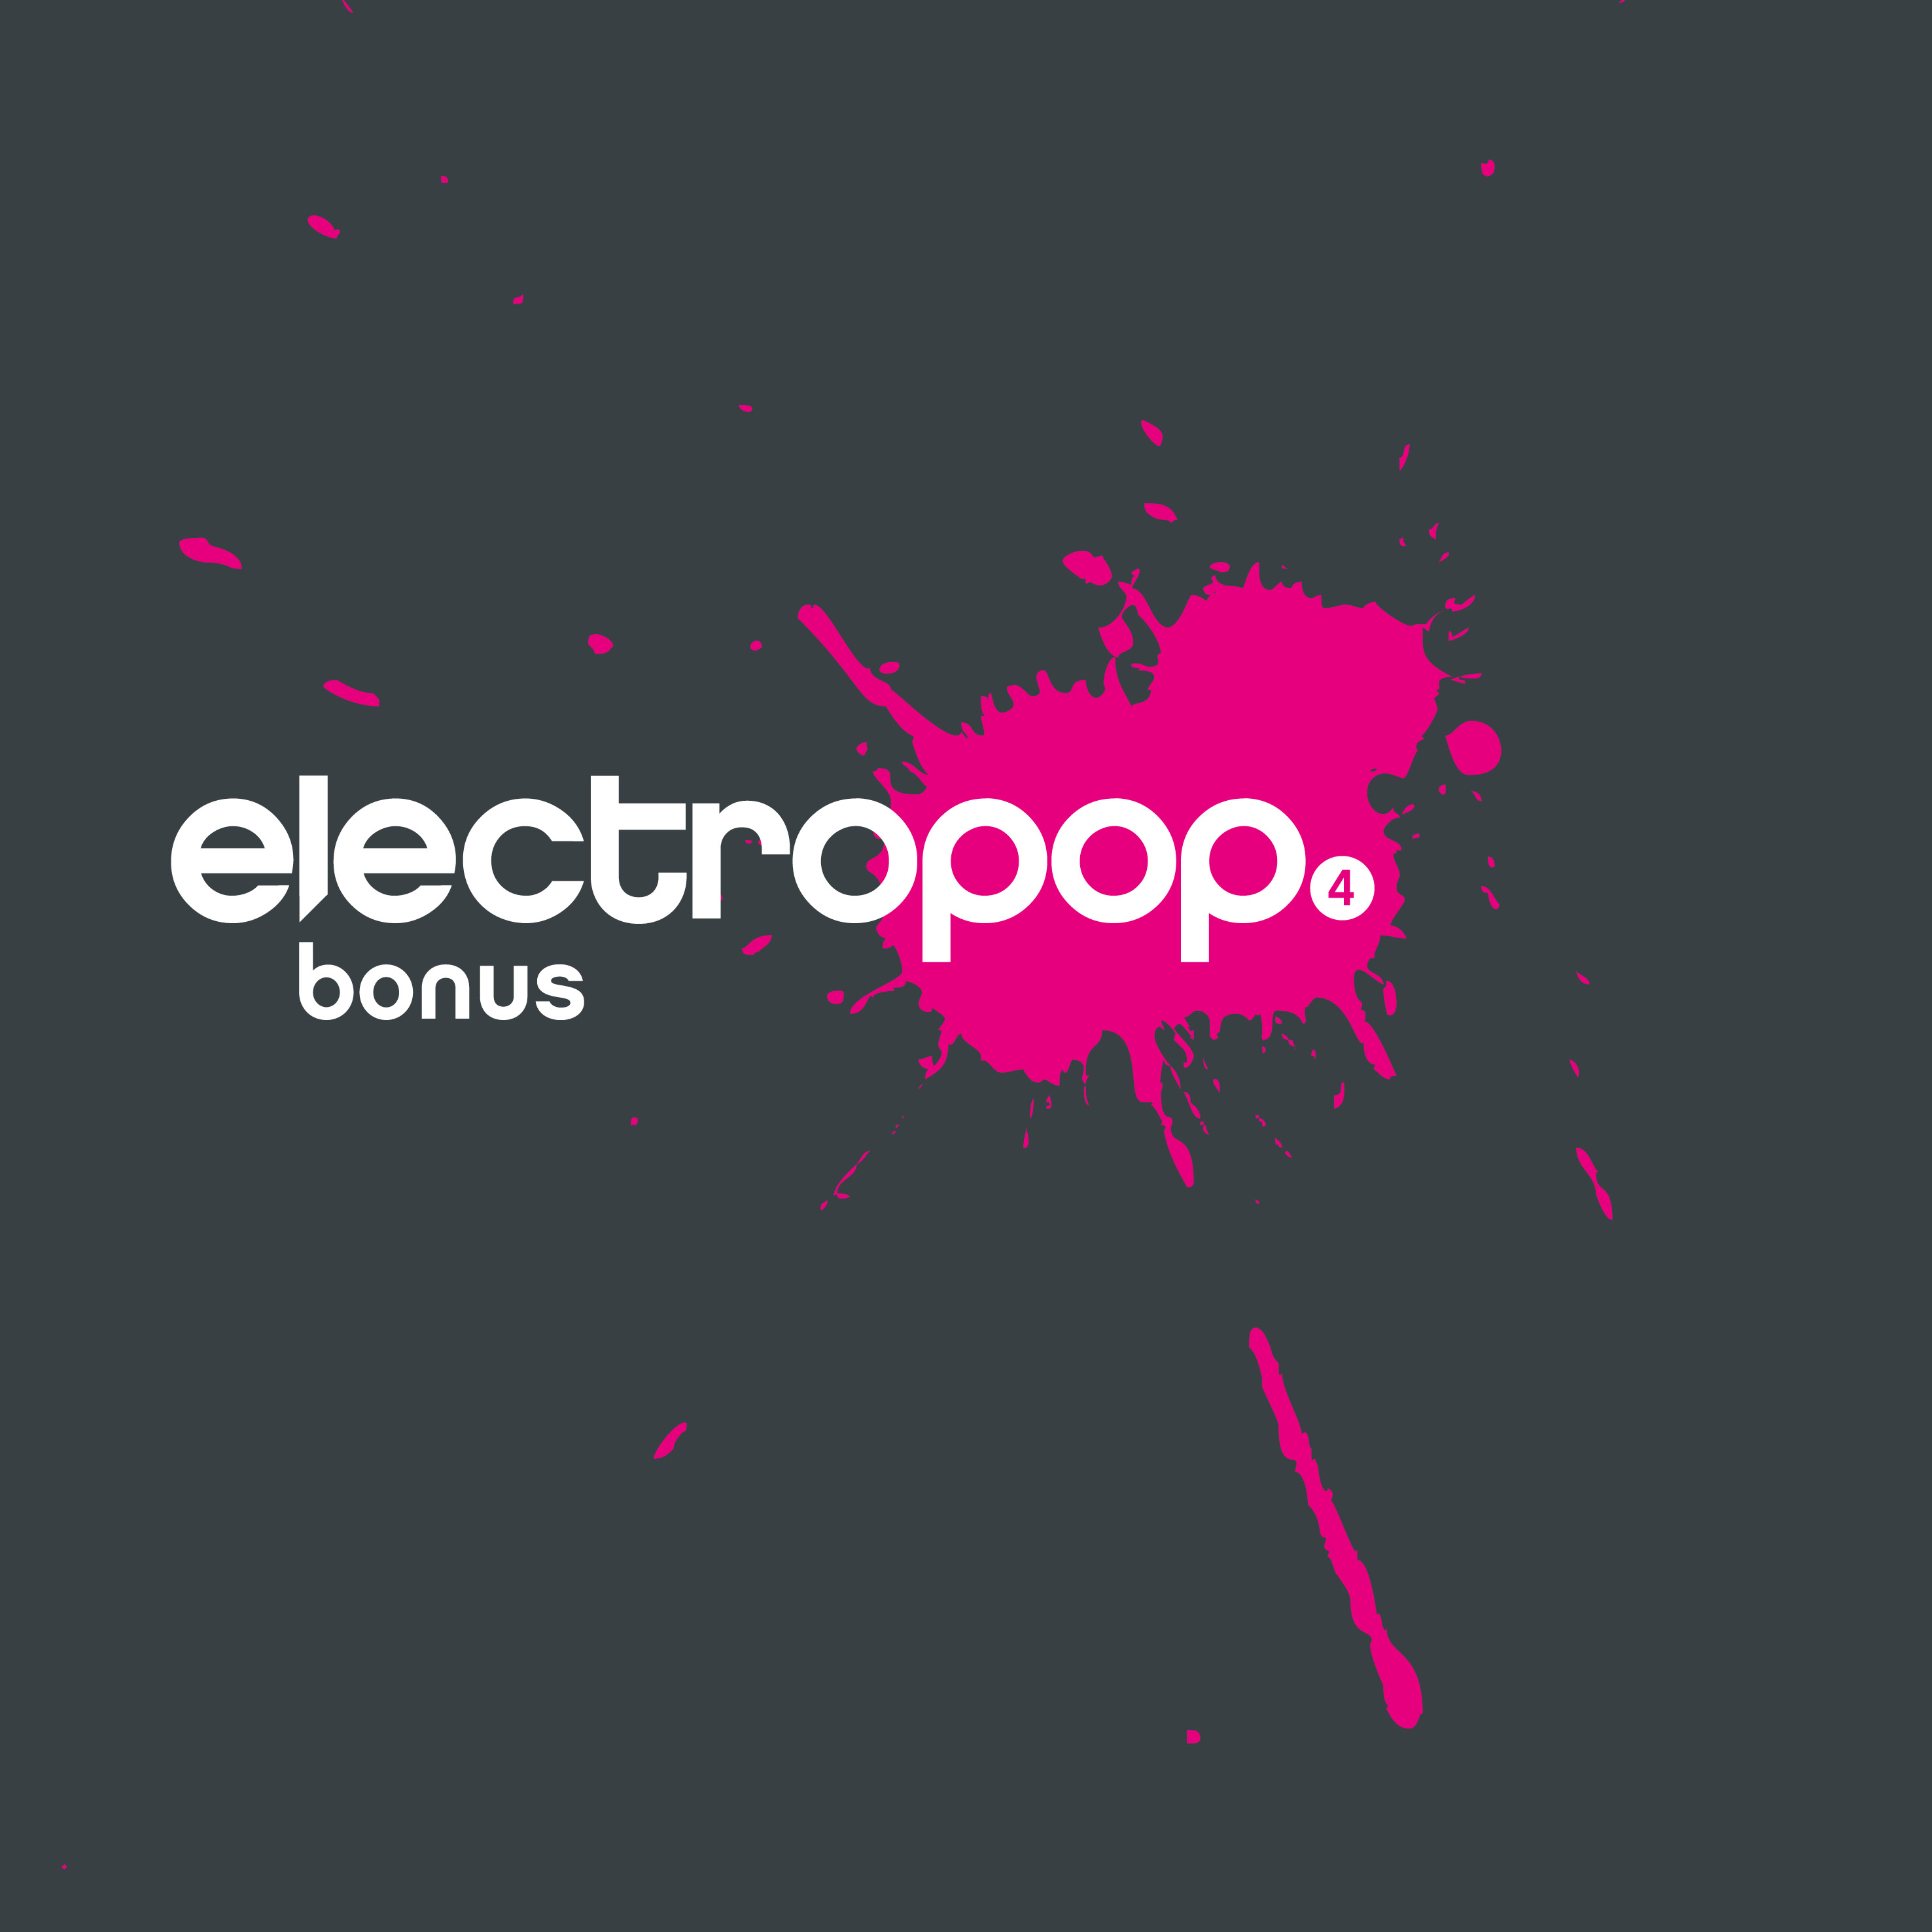 electropop.20 bonus 4